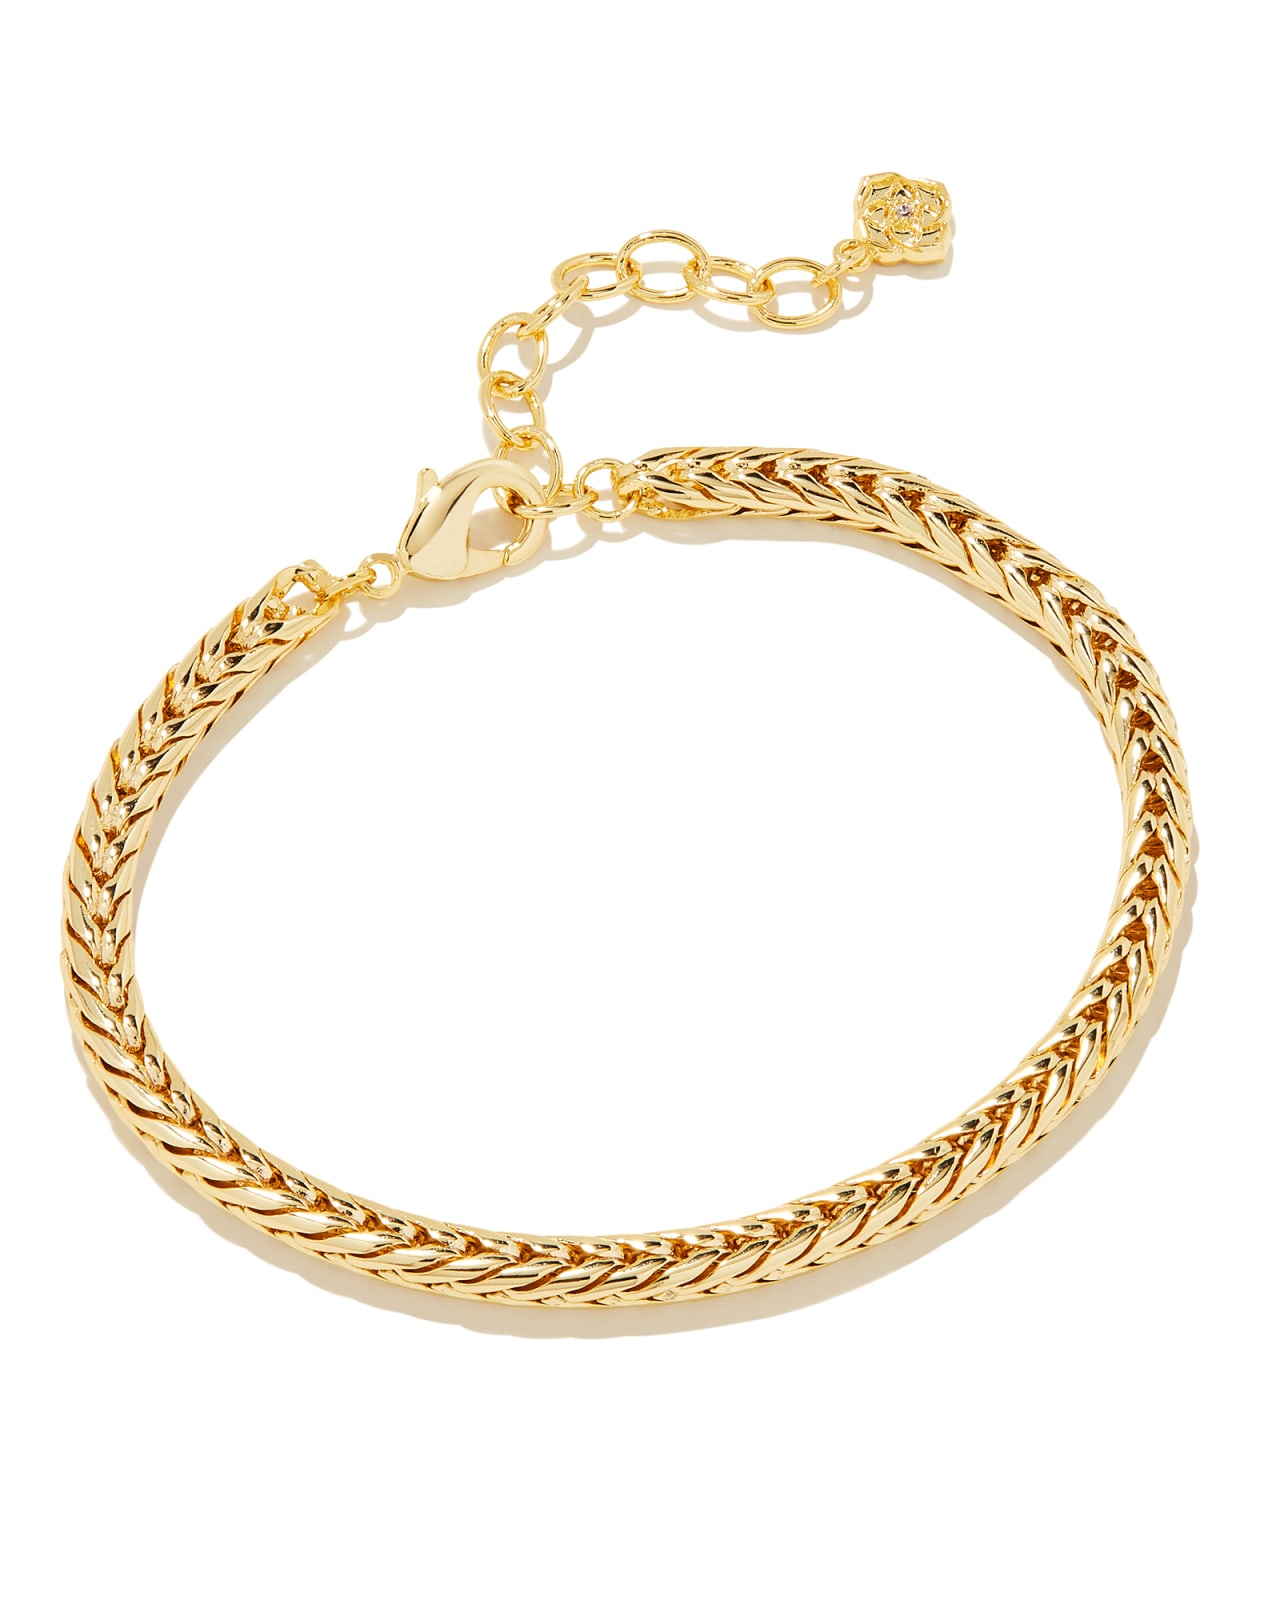 Kinsley Chain Bracelet in Gold | Kendra Scott